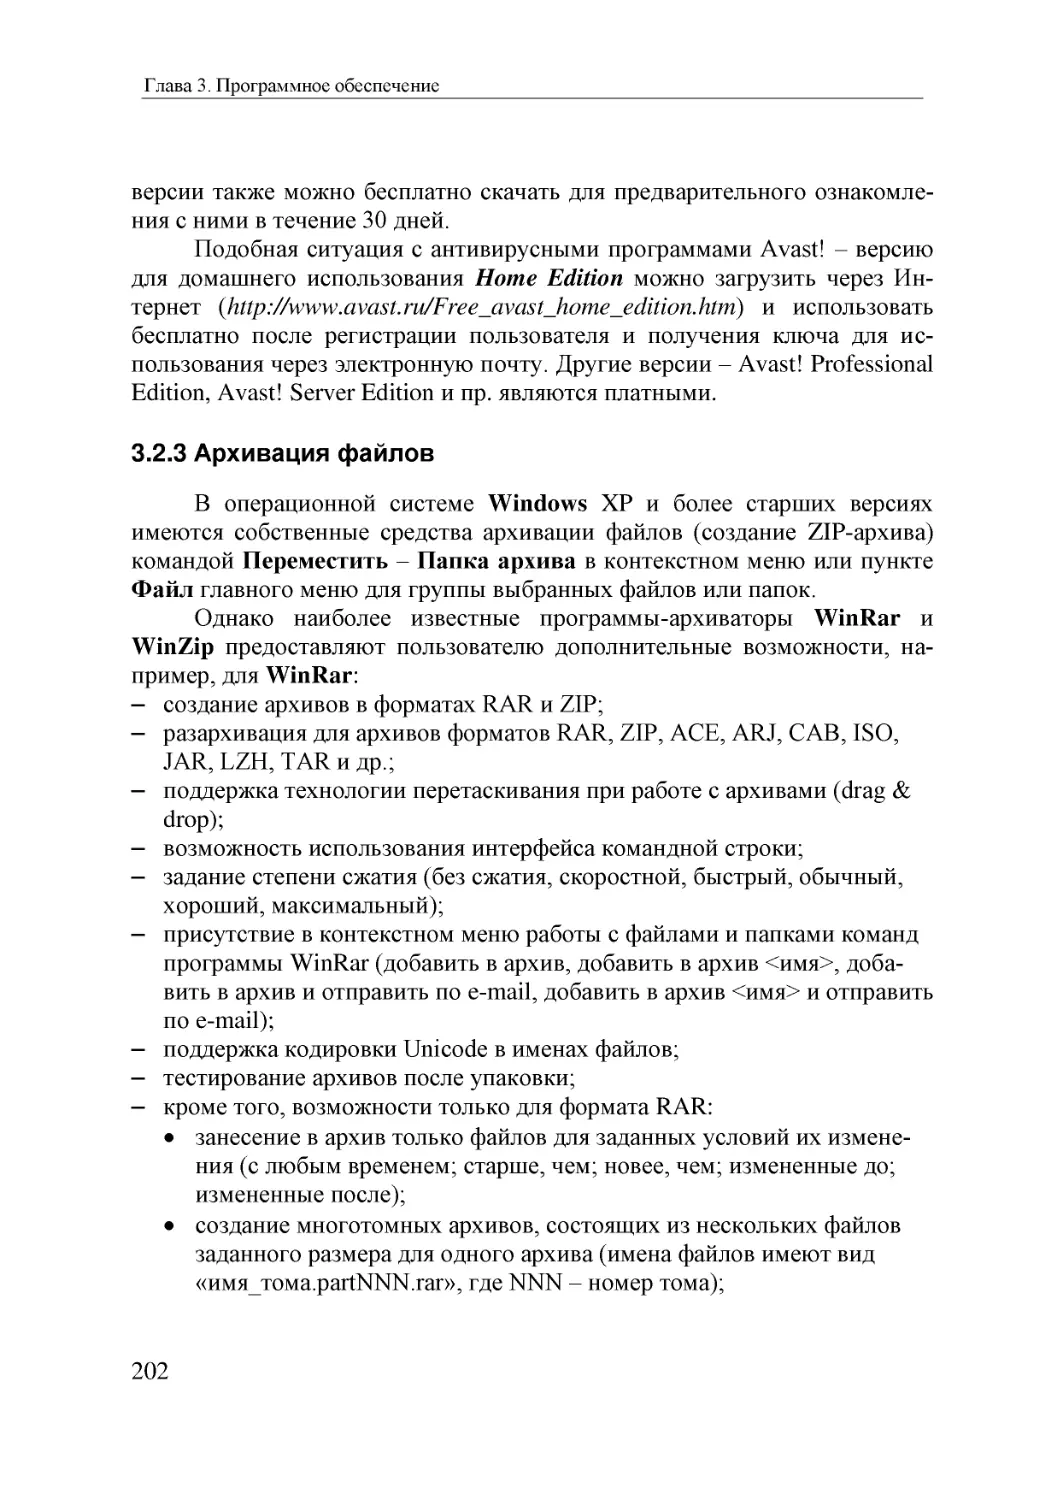 Informatika_Uchebnik_dlya_vuzov_2010 202